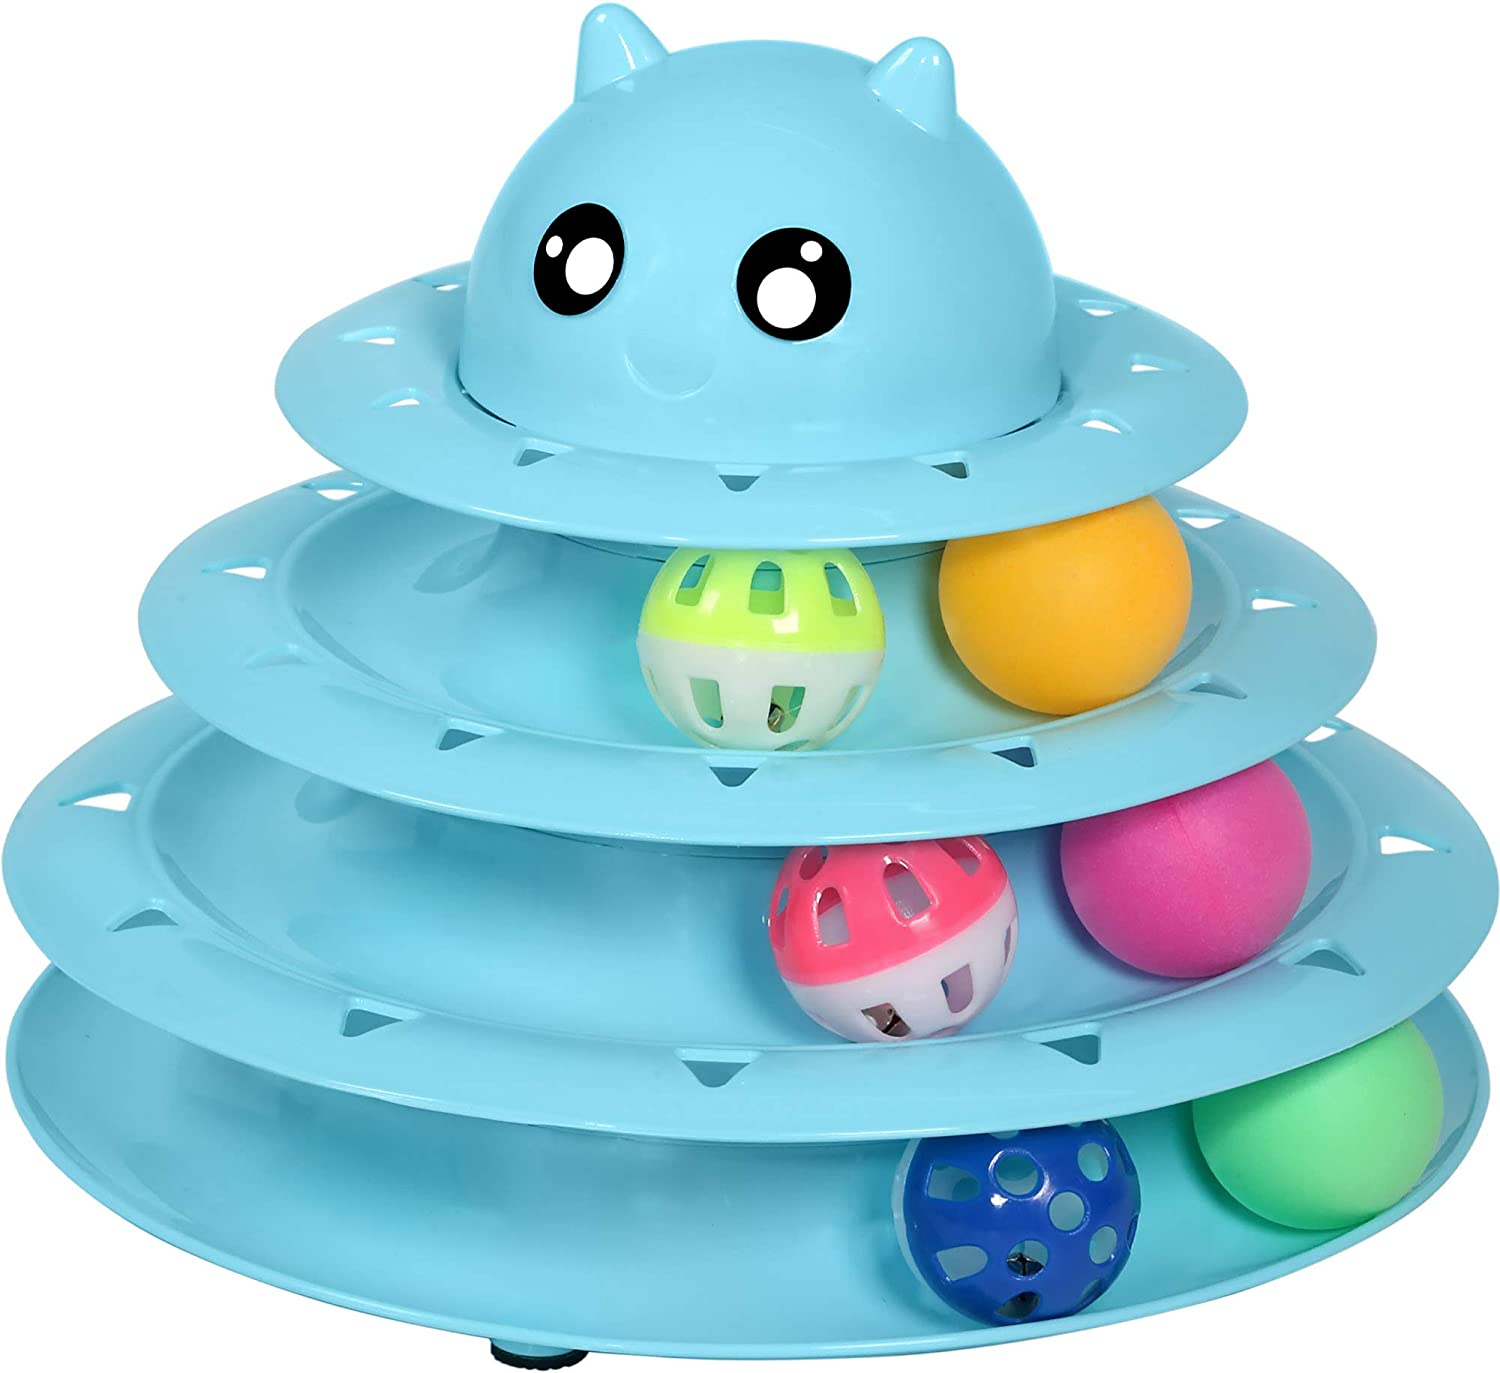 Venda a l'engròs de joguines interactives per a gats amb torre de rodets de plàstic